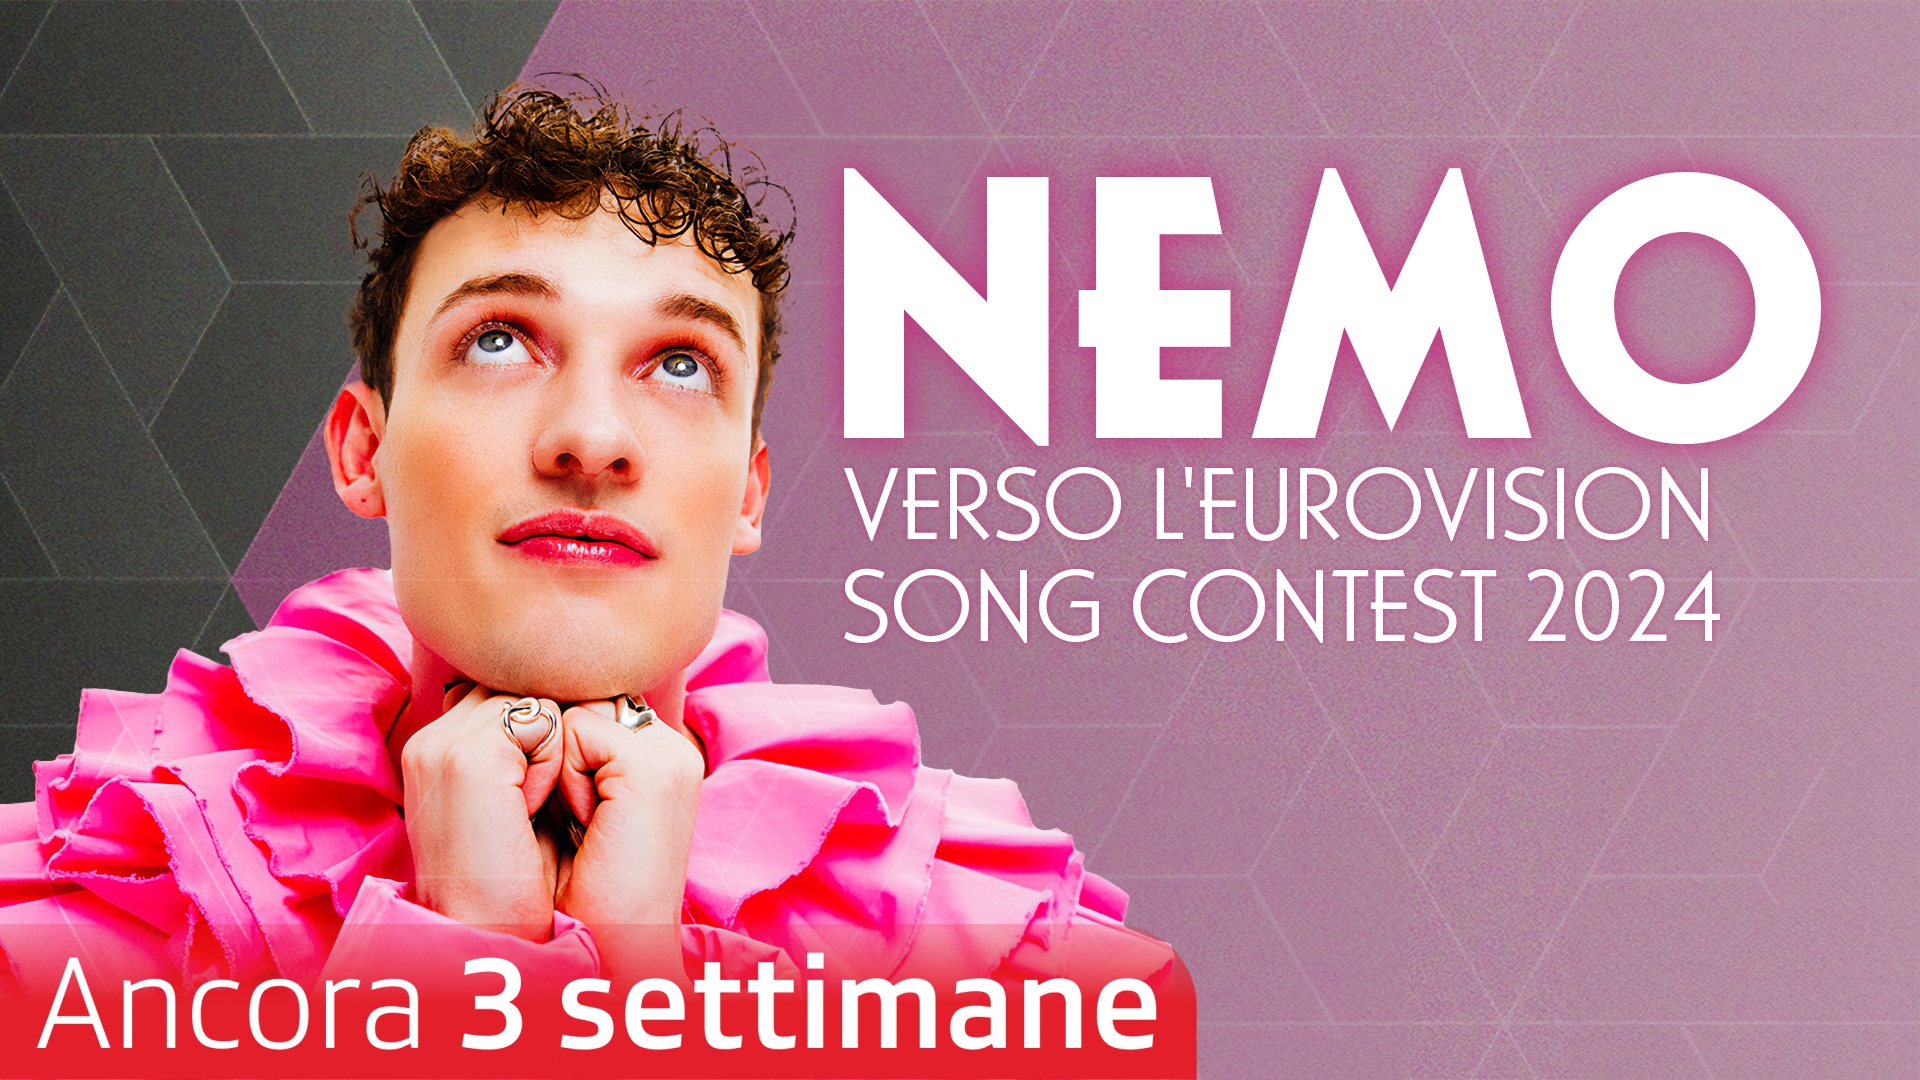 Nemo - Verso l'Eurovision Song Contest 2024